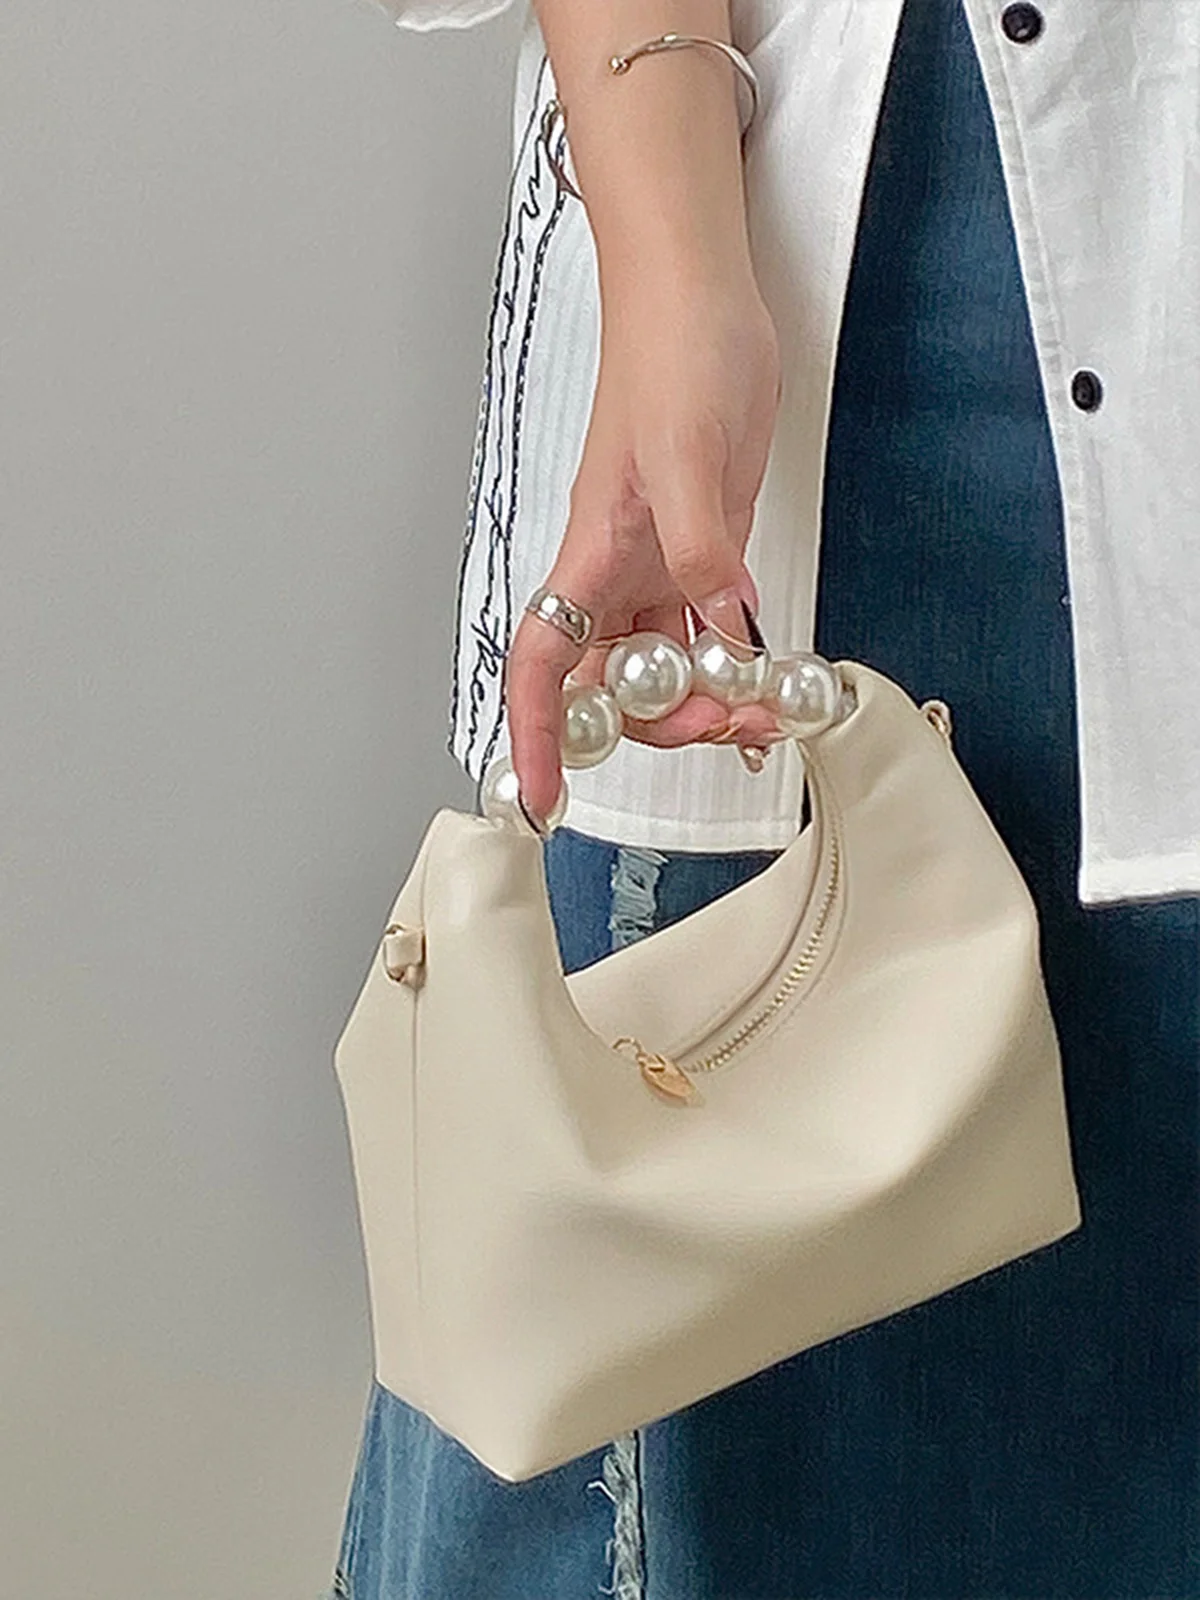 Elegant Nachgemachte Perle Handtasche Dünn Kette Gurt Umhängetasche